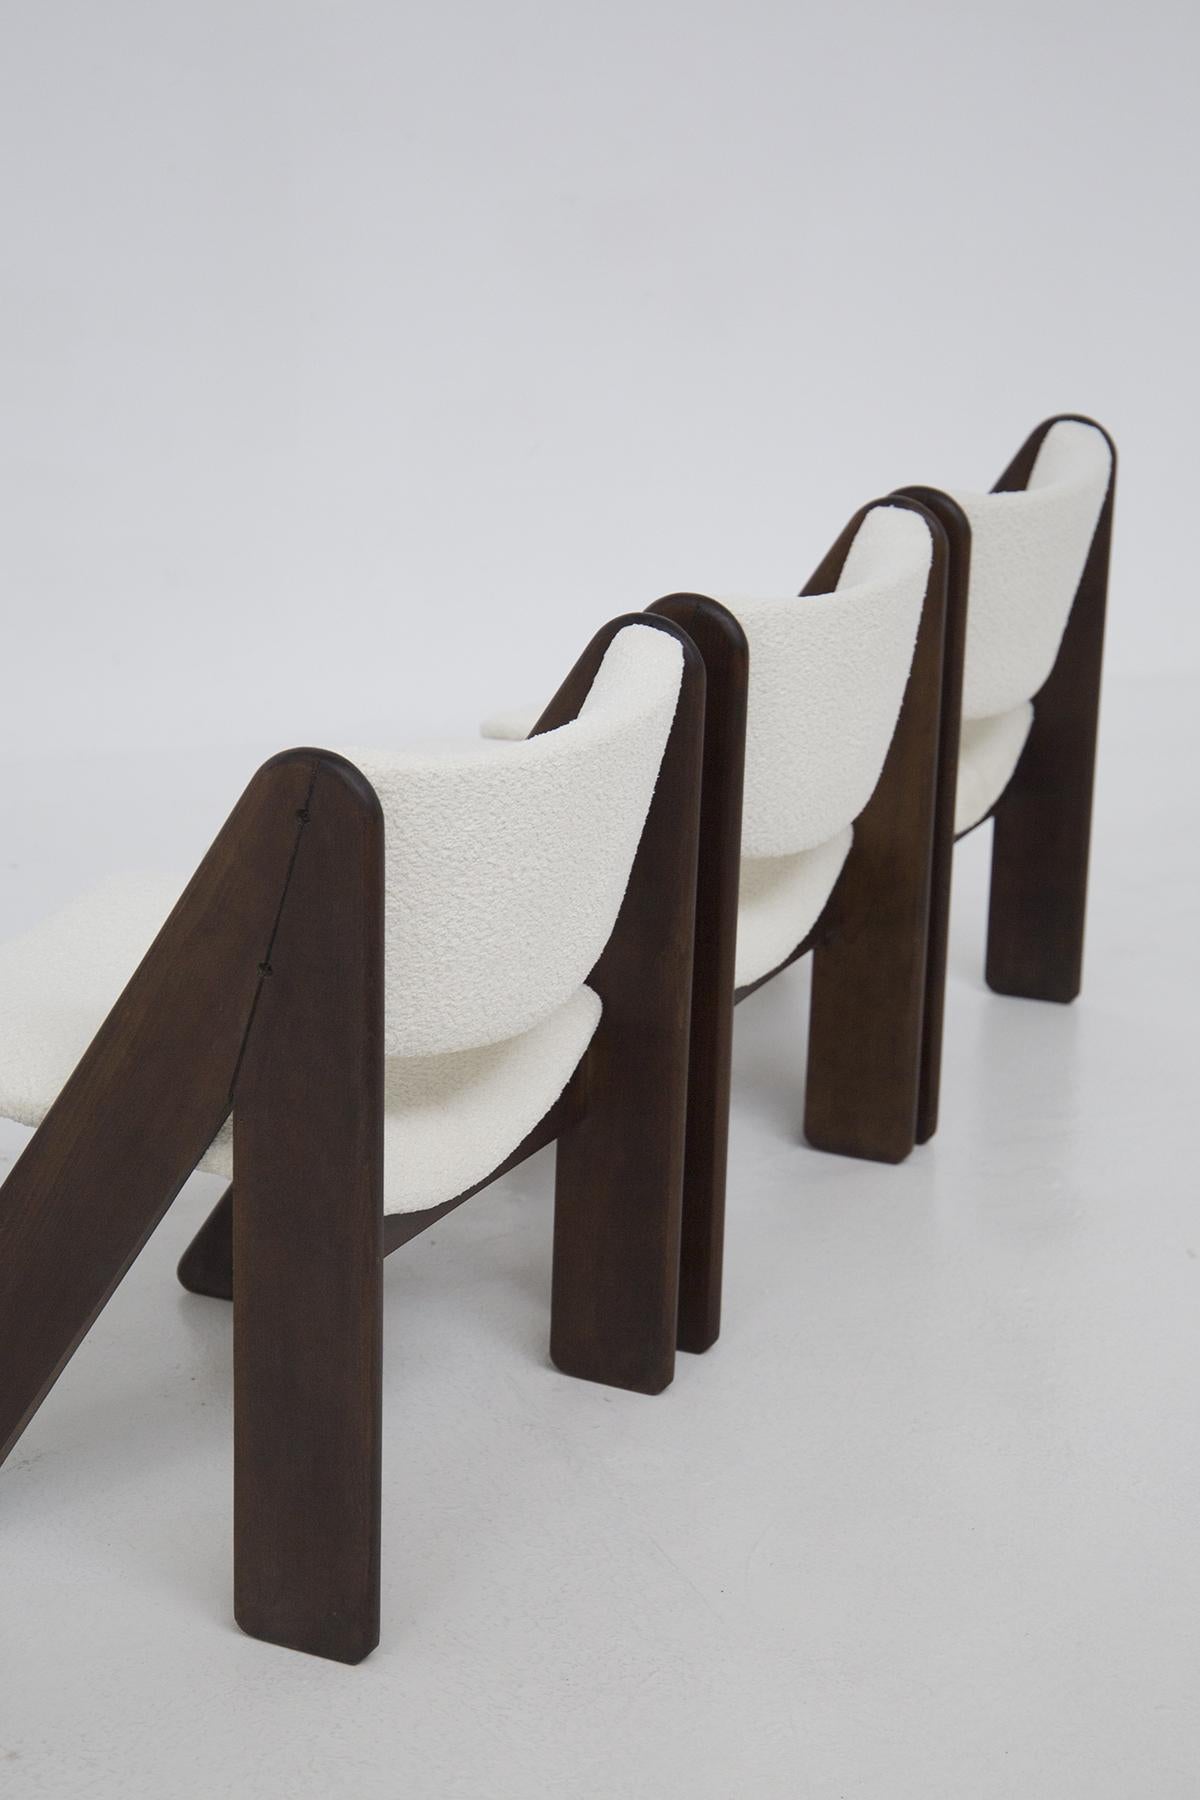 Wir stellen Ihnen das großartige Set aus 6 Holzstühlen vor, das der berühmte Gigi Sabadin in den stilvollen 1970er Jahren für den renommierten italienischen Hersteller Stilwood entworfen hat. Wir fügen die Veröffentlichung bei.

Stellen Sie sich